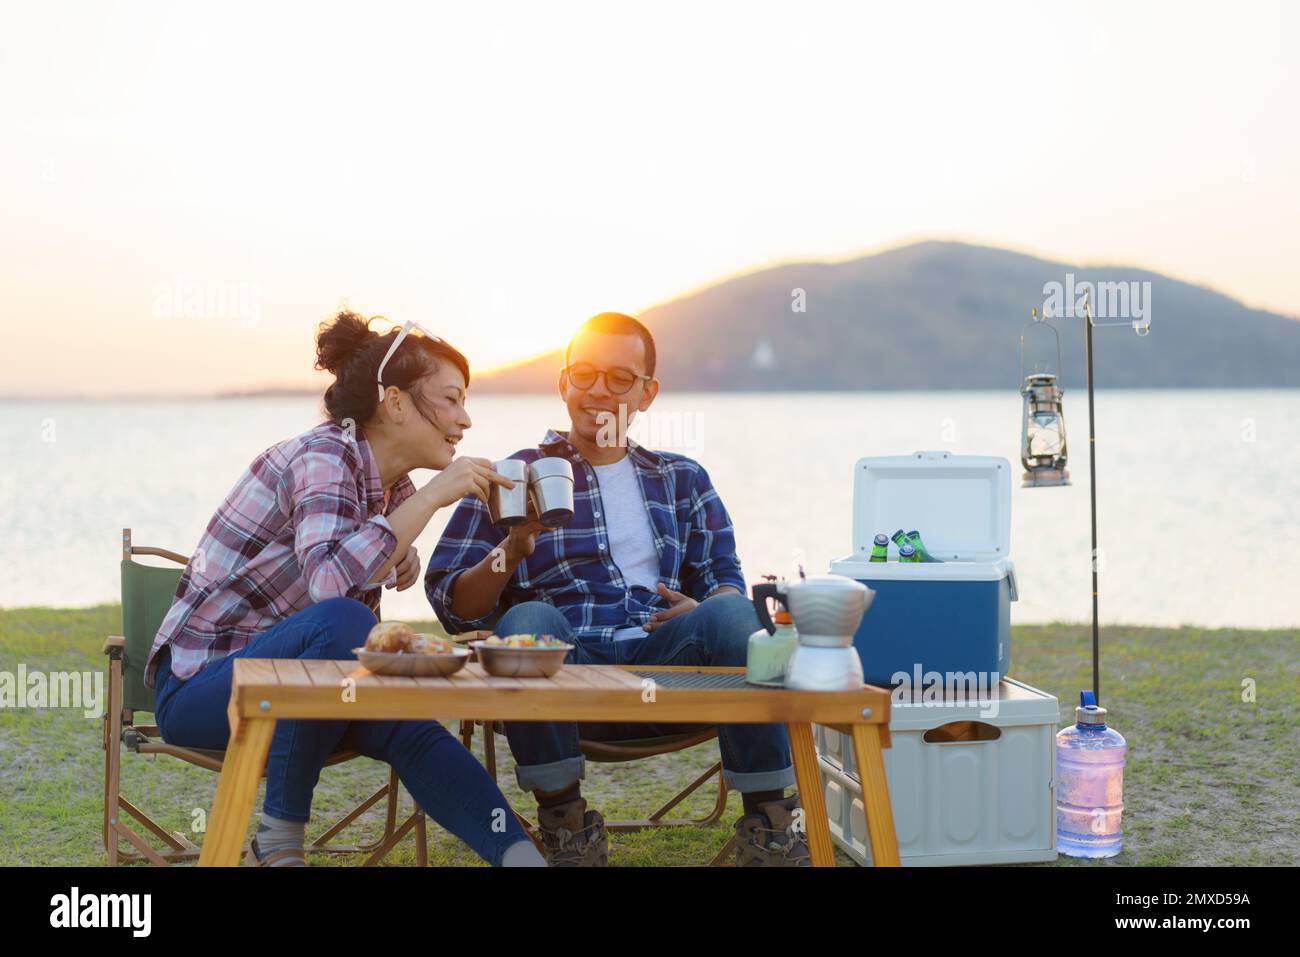 Ein asiatisches Paar trinkt eine Tasse Kaffee oder Wasser auf dem Campingplatz mit See im Hintergrund bei Sonnenuntergang Stockfoto